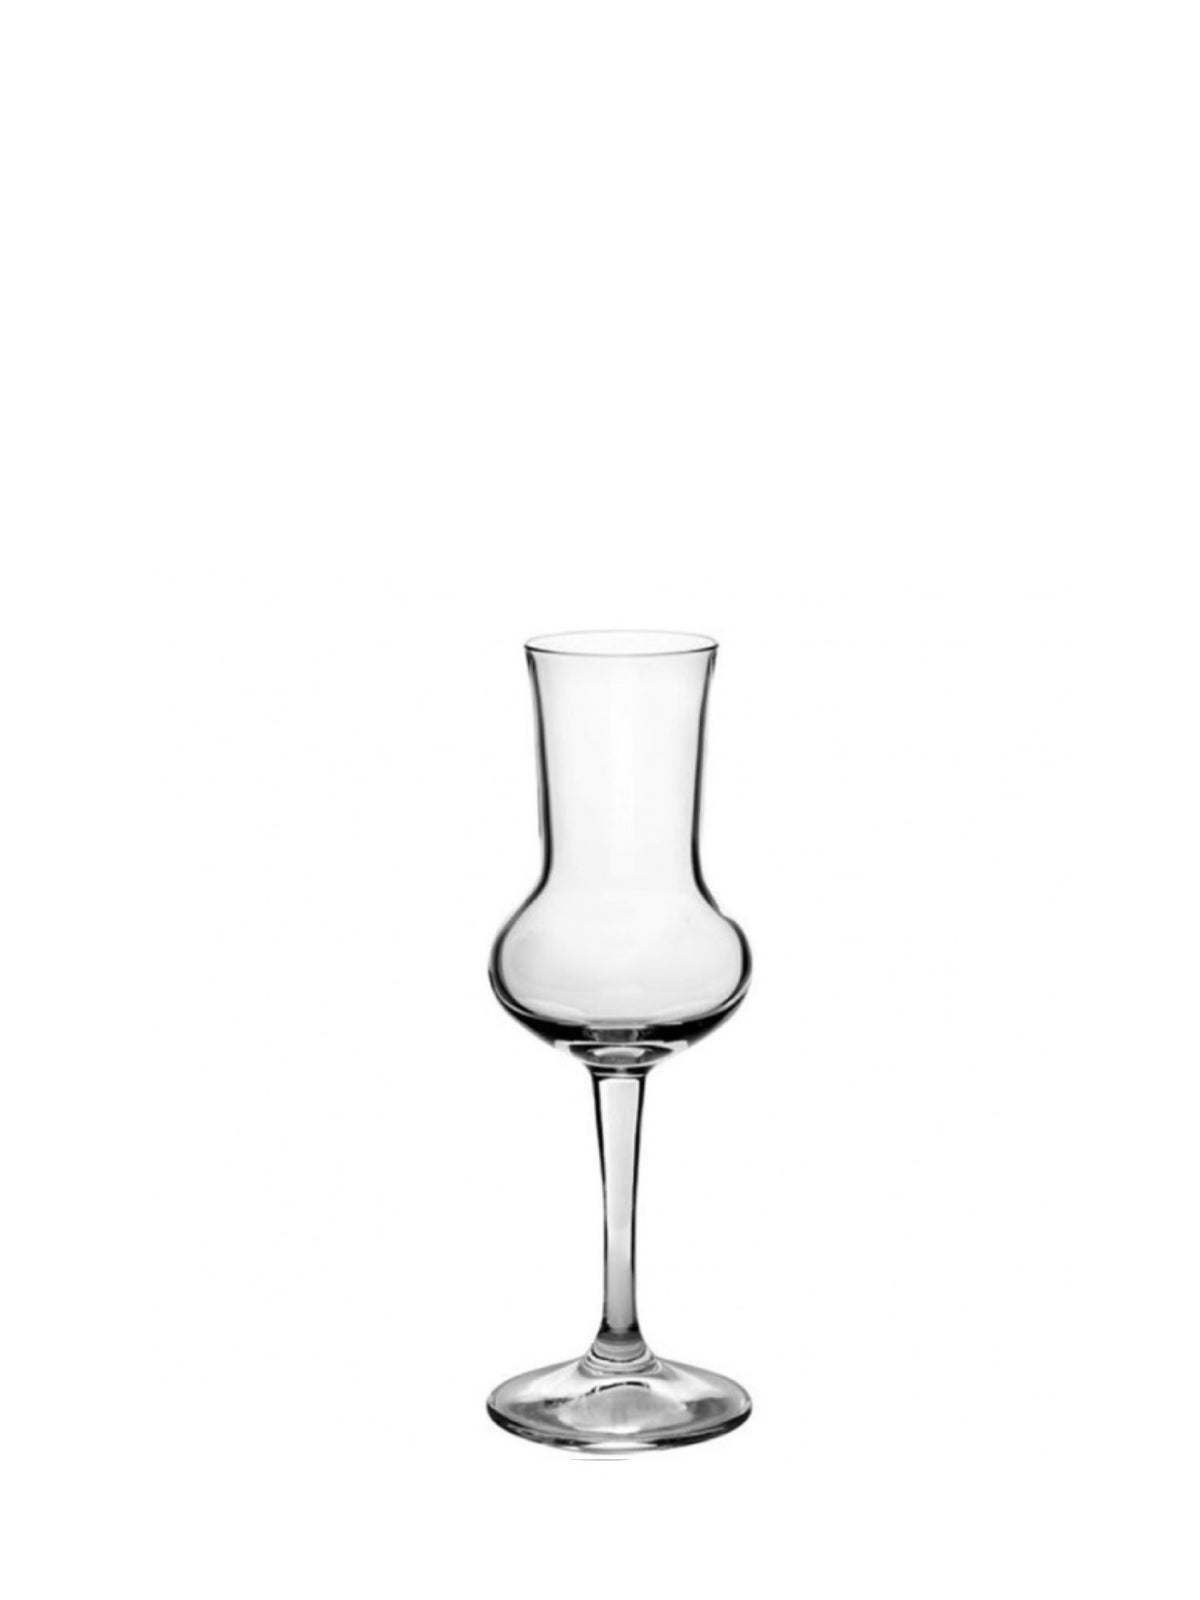 Grappaglas med en kapacitet på 8,5 cl - perfekt til at nyde den intense smag af grappa.